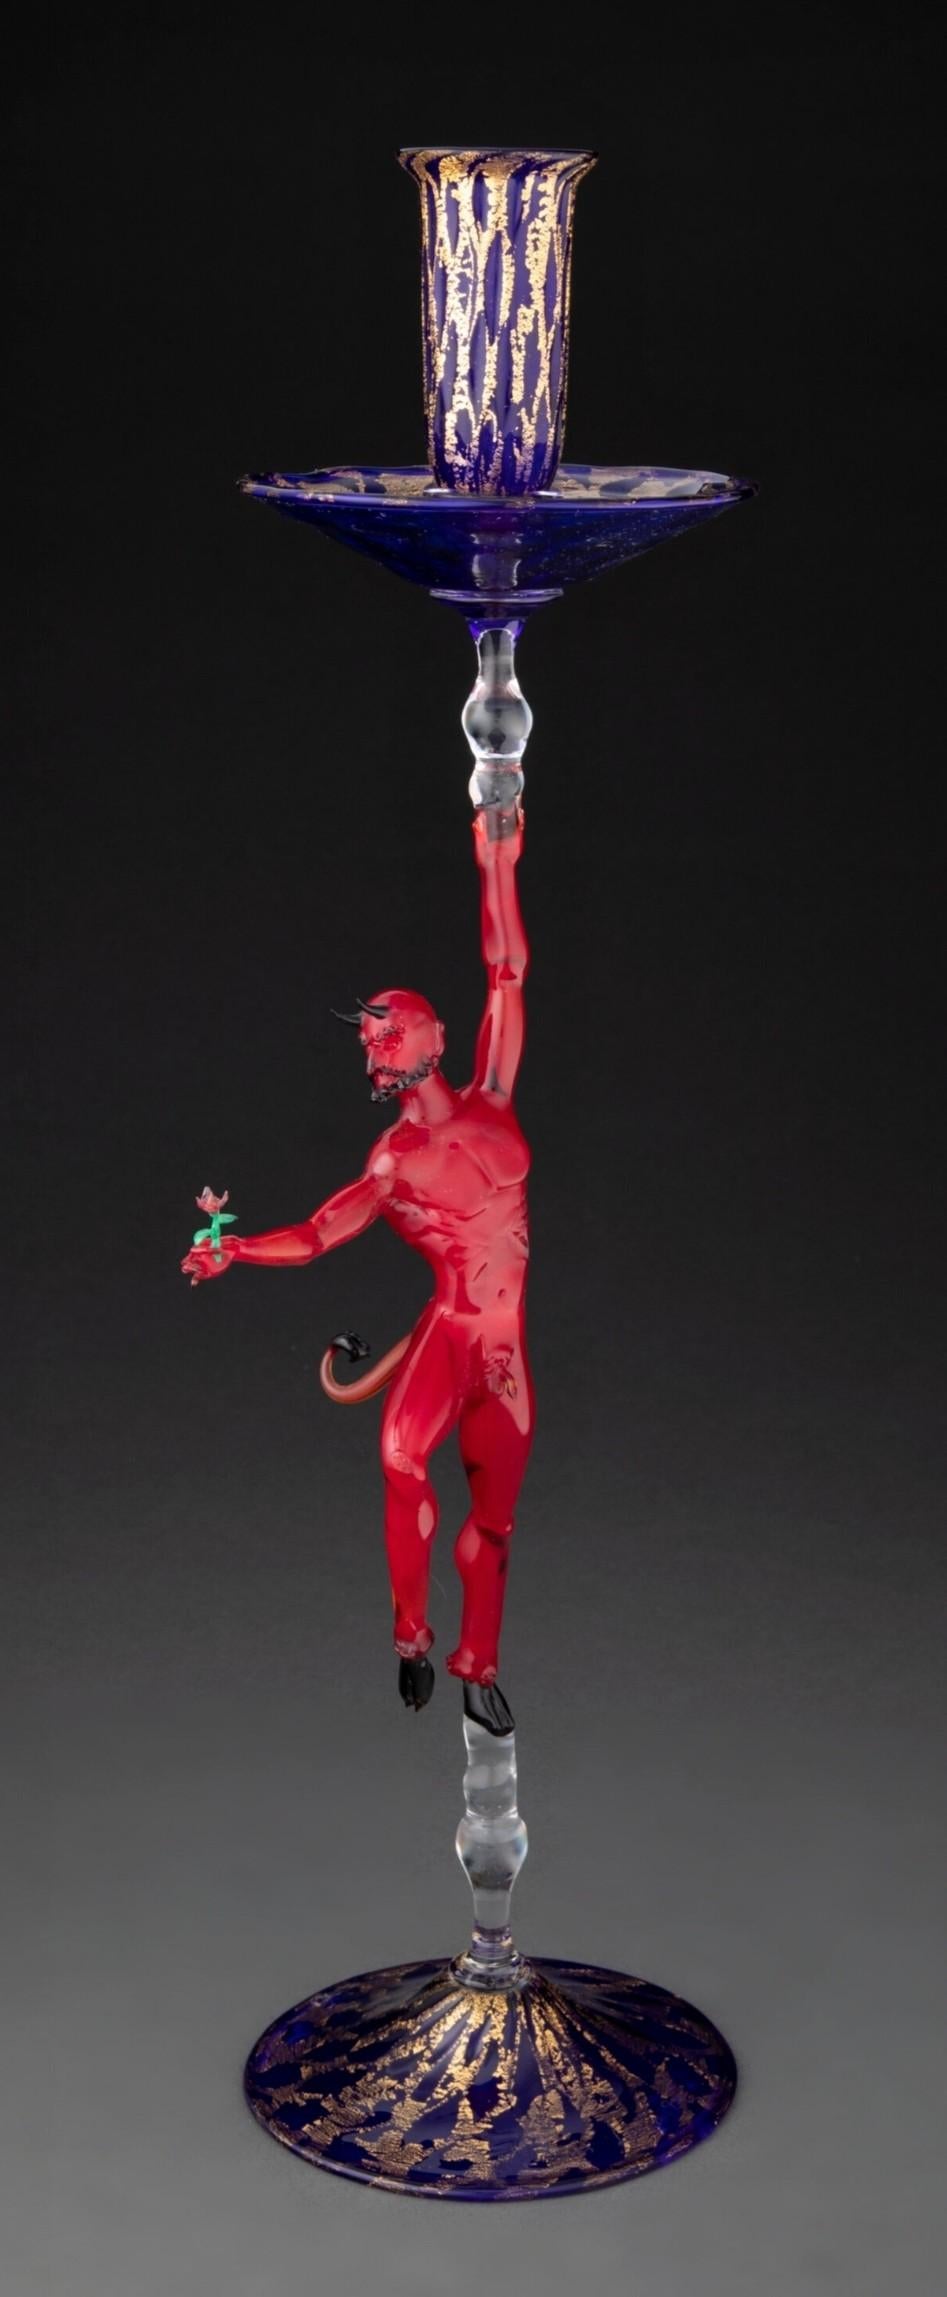 Rare chandelier en verre soufflé vénitien signé Lucio Bubacco (italien, né en 1957), daté de 1994, représentant un diable rouge avec une rose, d'une exécution exceptionnelle.

Le chandelier sculptural visuellement saisissant en verre cobalt avec